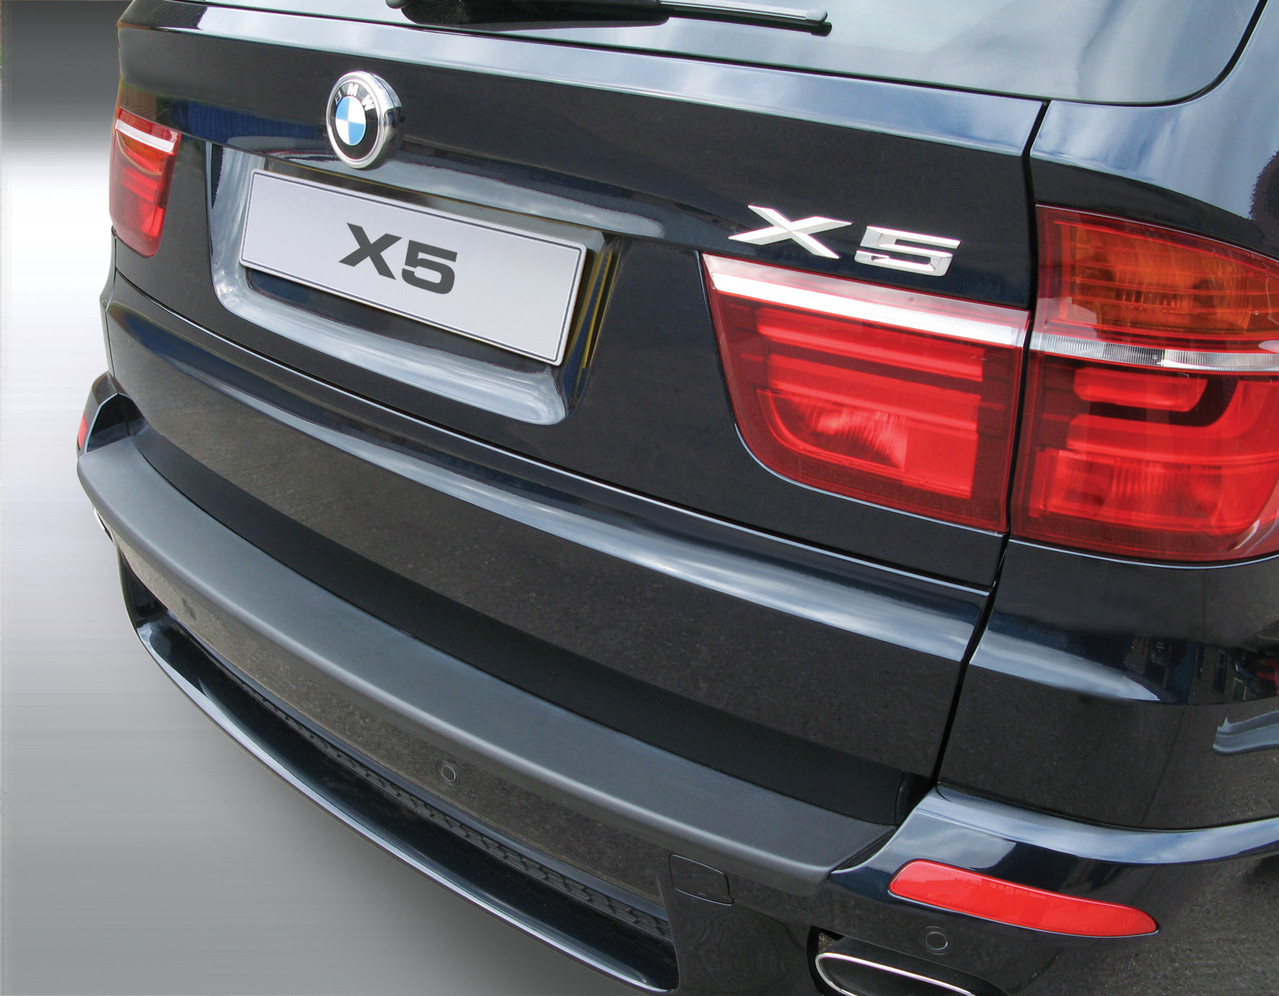 Ladekantenschutz für BMW X5 - Schutz für die Ladekante Ihres Fahrzeuges